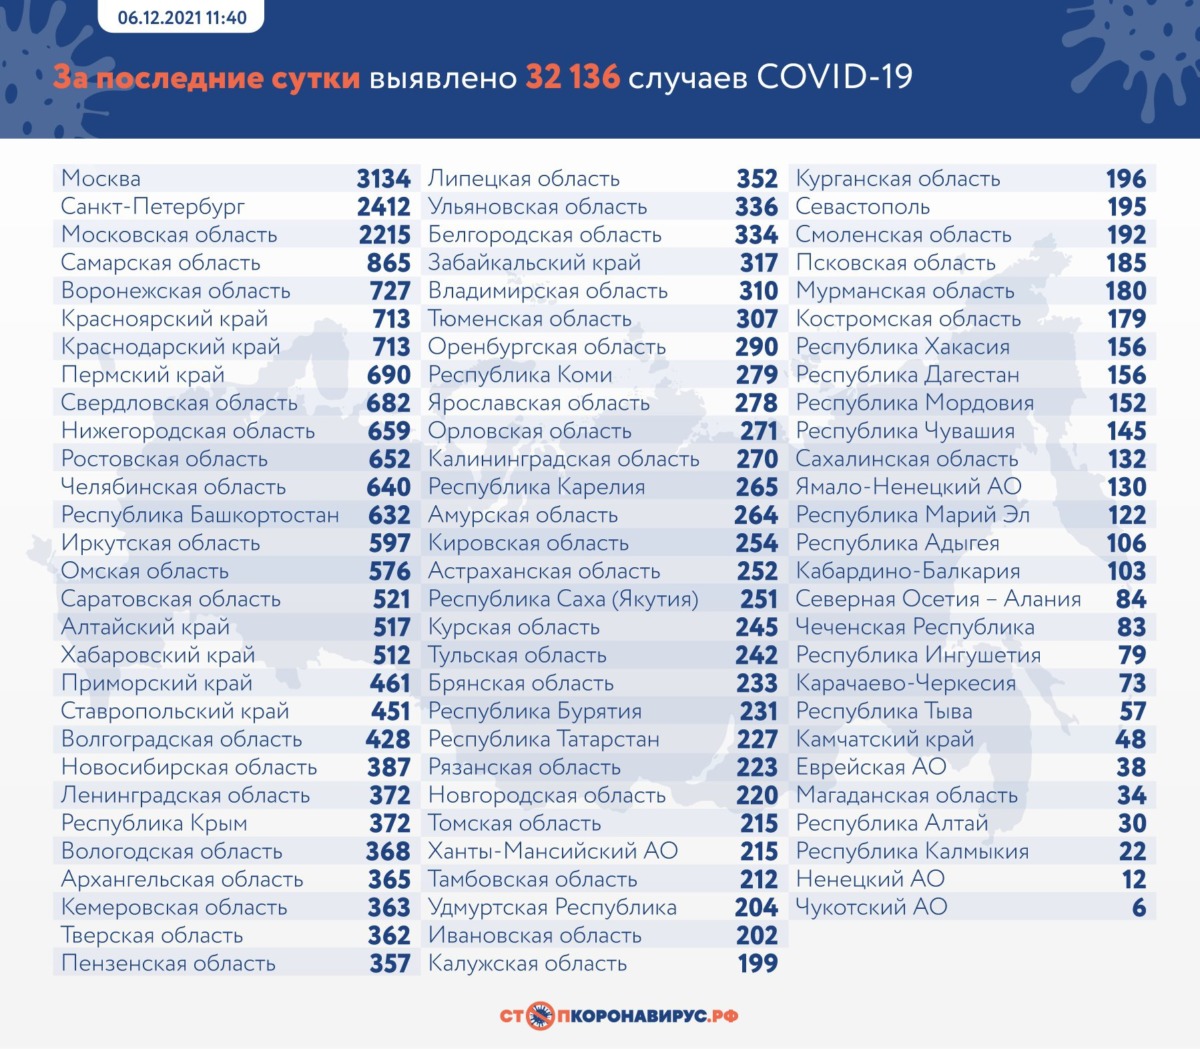 Статистика коронавируса в России на 6 декабря